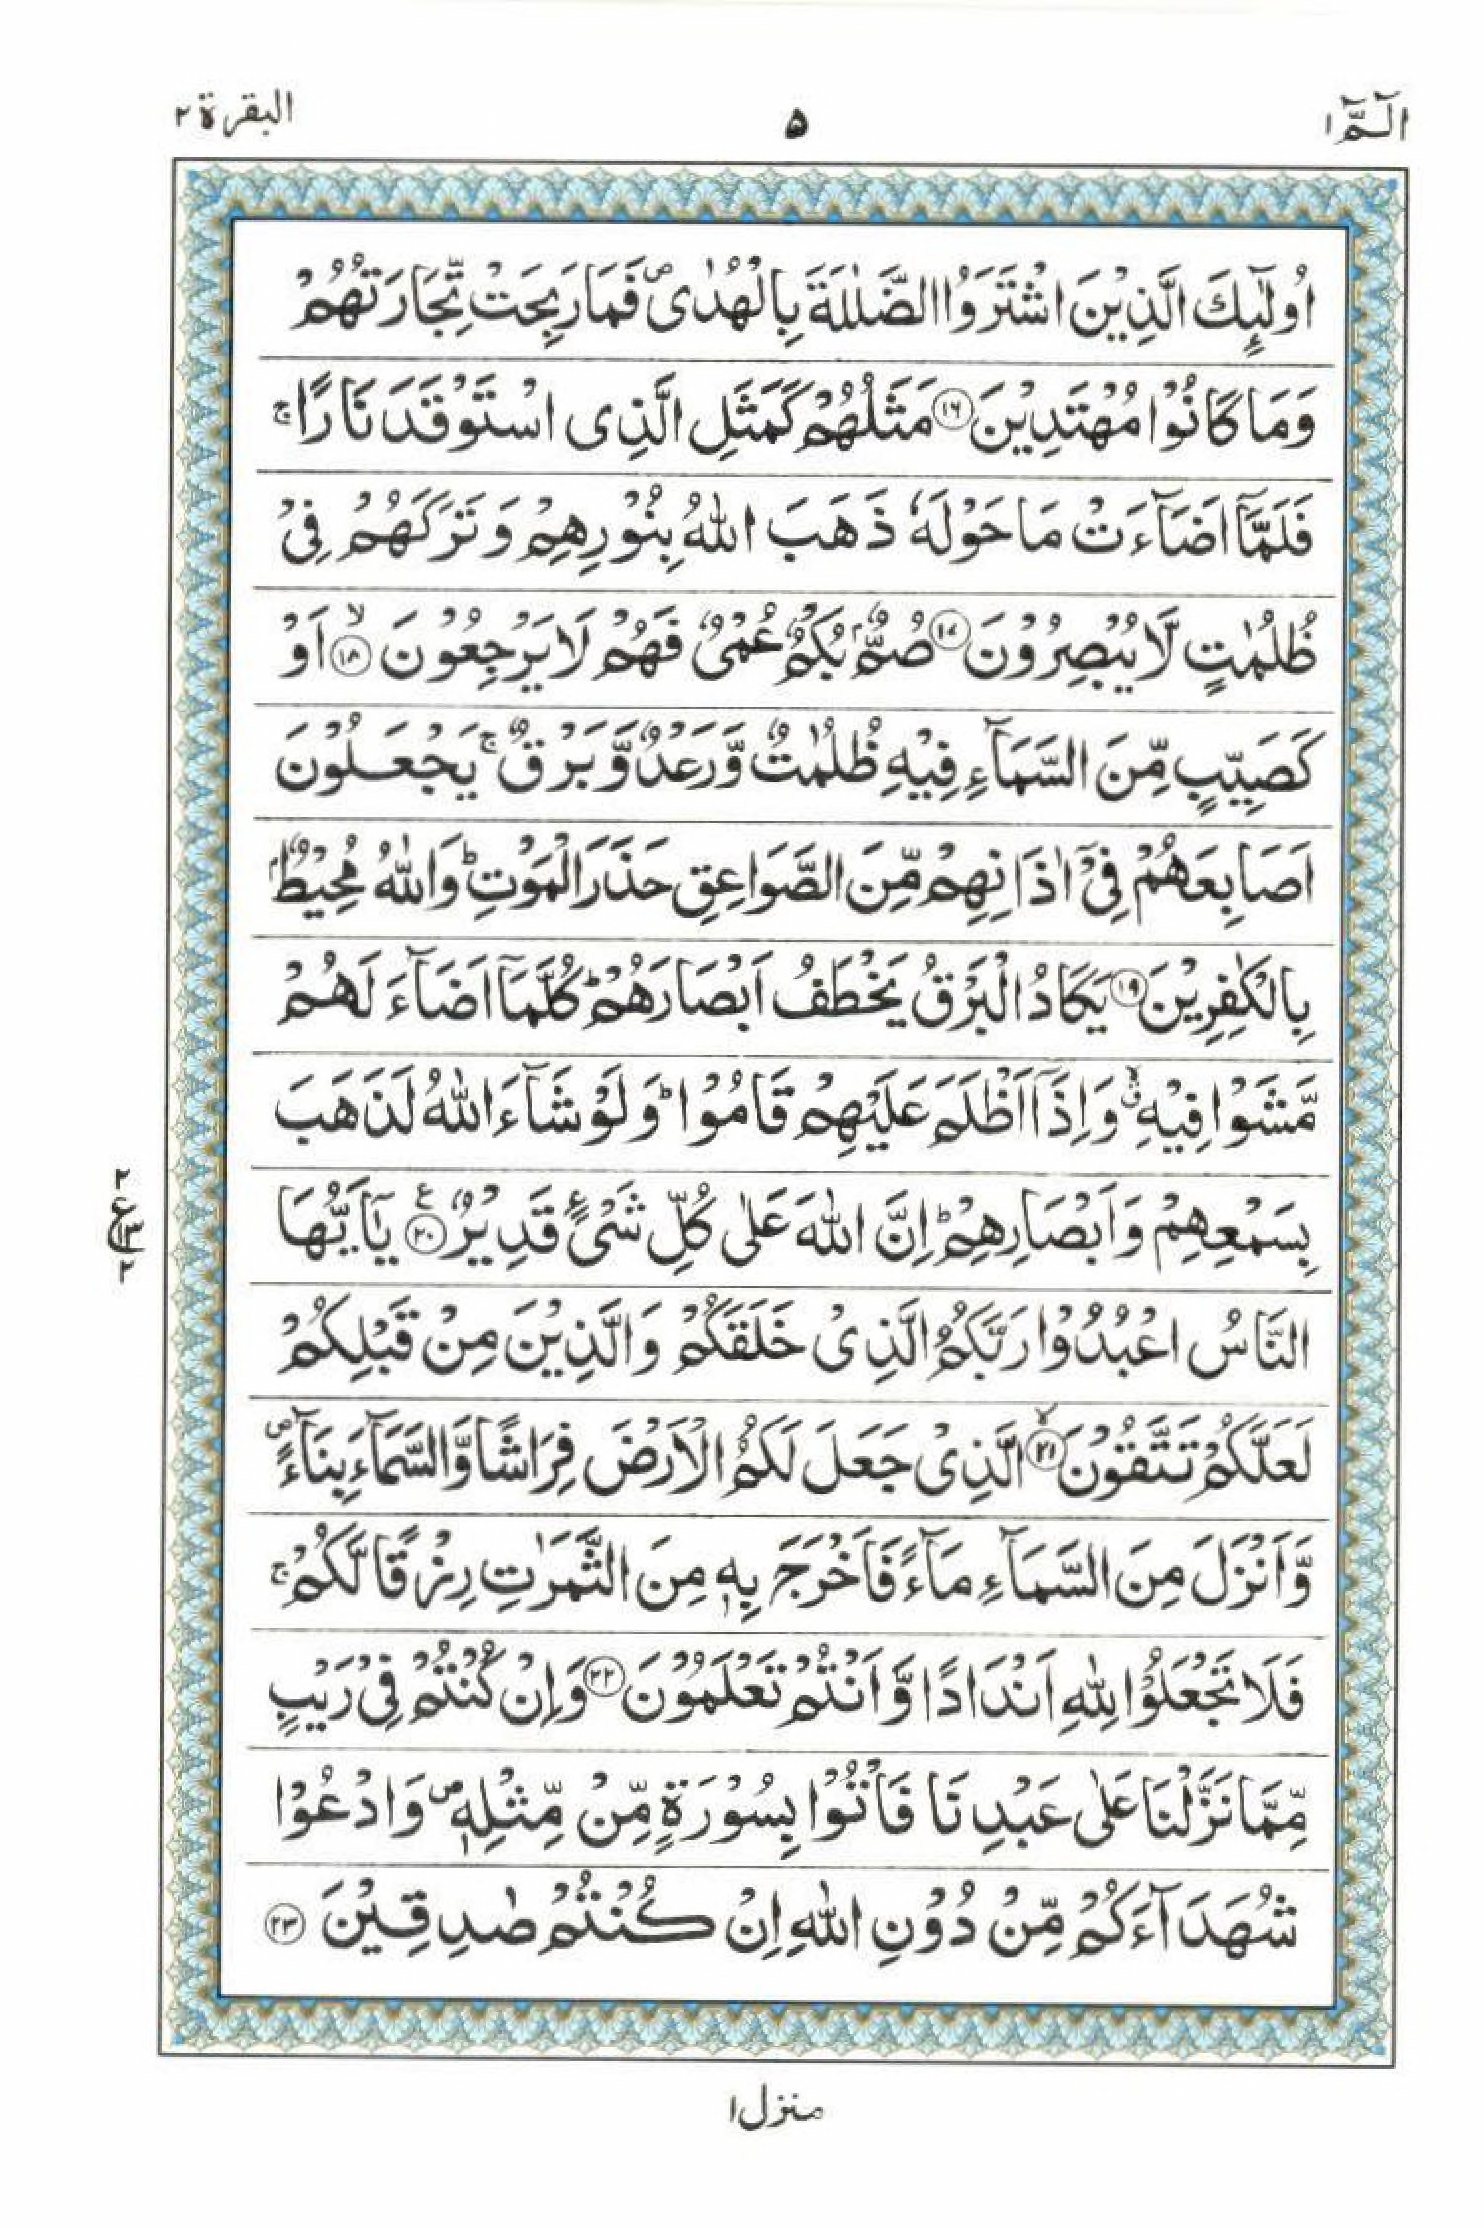 Read 15 Lines Al Quran Part 1 Page No 5, Practice Quran